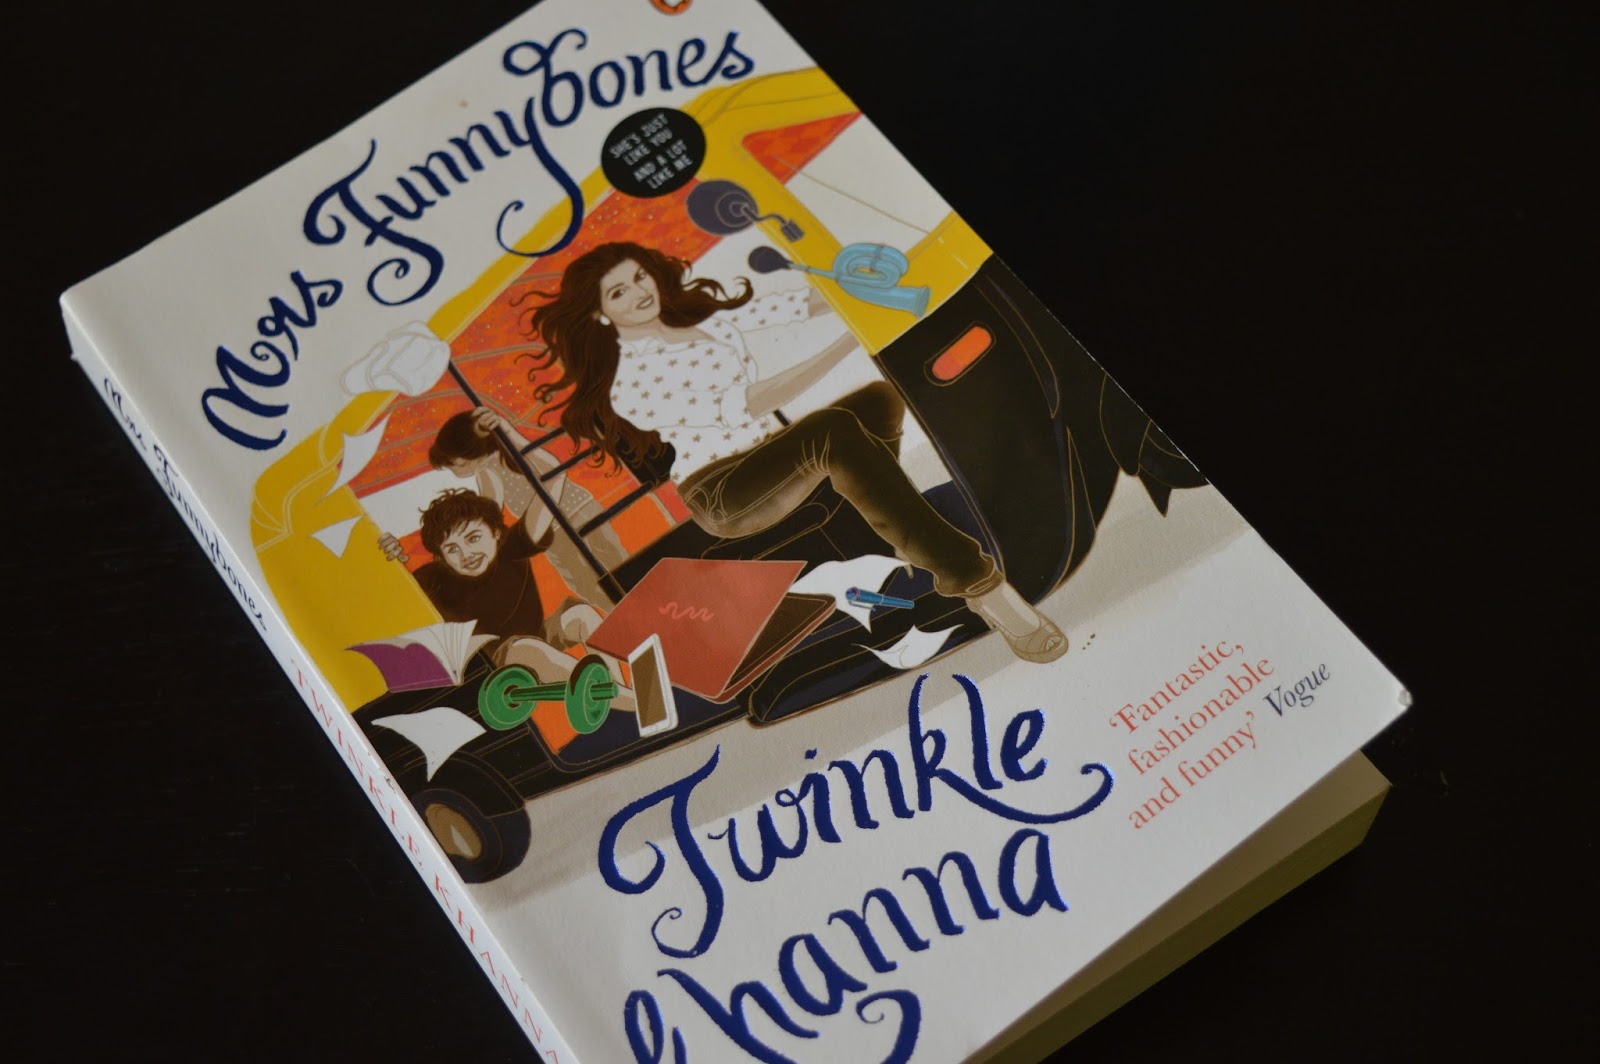 Mrs. Funnybones by Twinkle Khanna